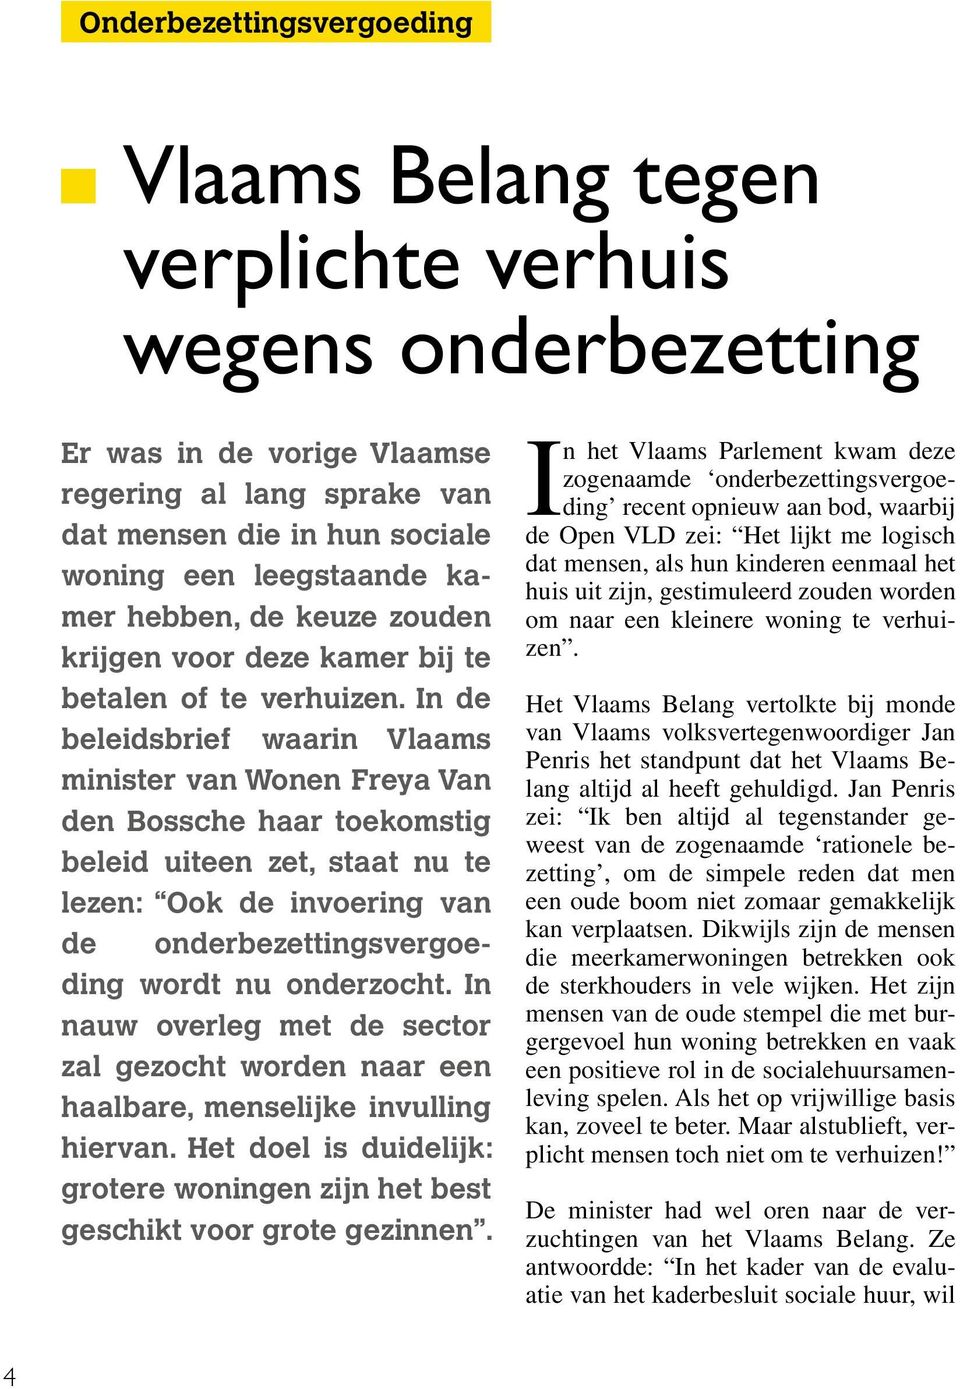 In de beleidsbrief waarin Vlaams minister van Wonen Freya Van den Bossche haar toekomstig beleid uiteen zet, staat nu te lezen: Ook de invoering van de onderbezettingsvergoeding wordt nu onderzocht.